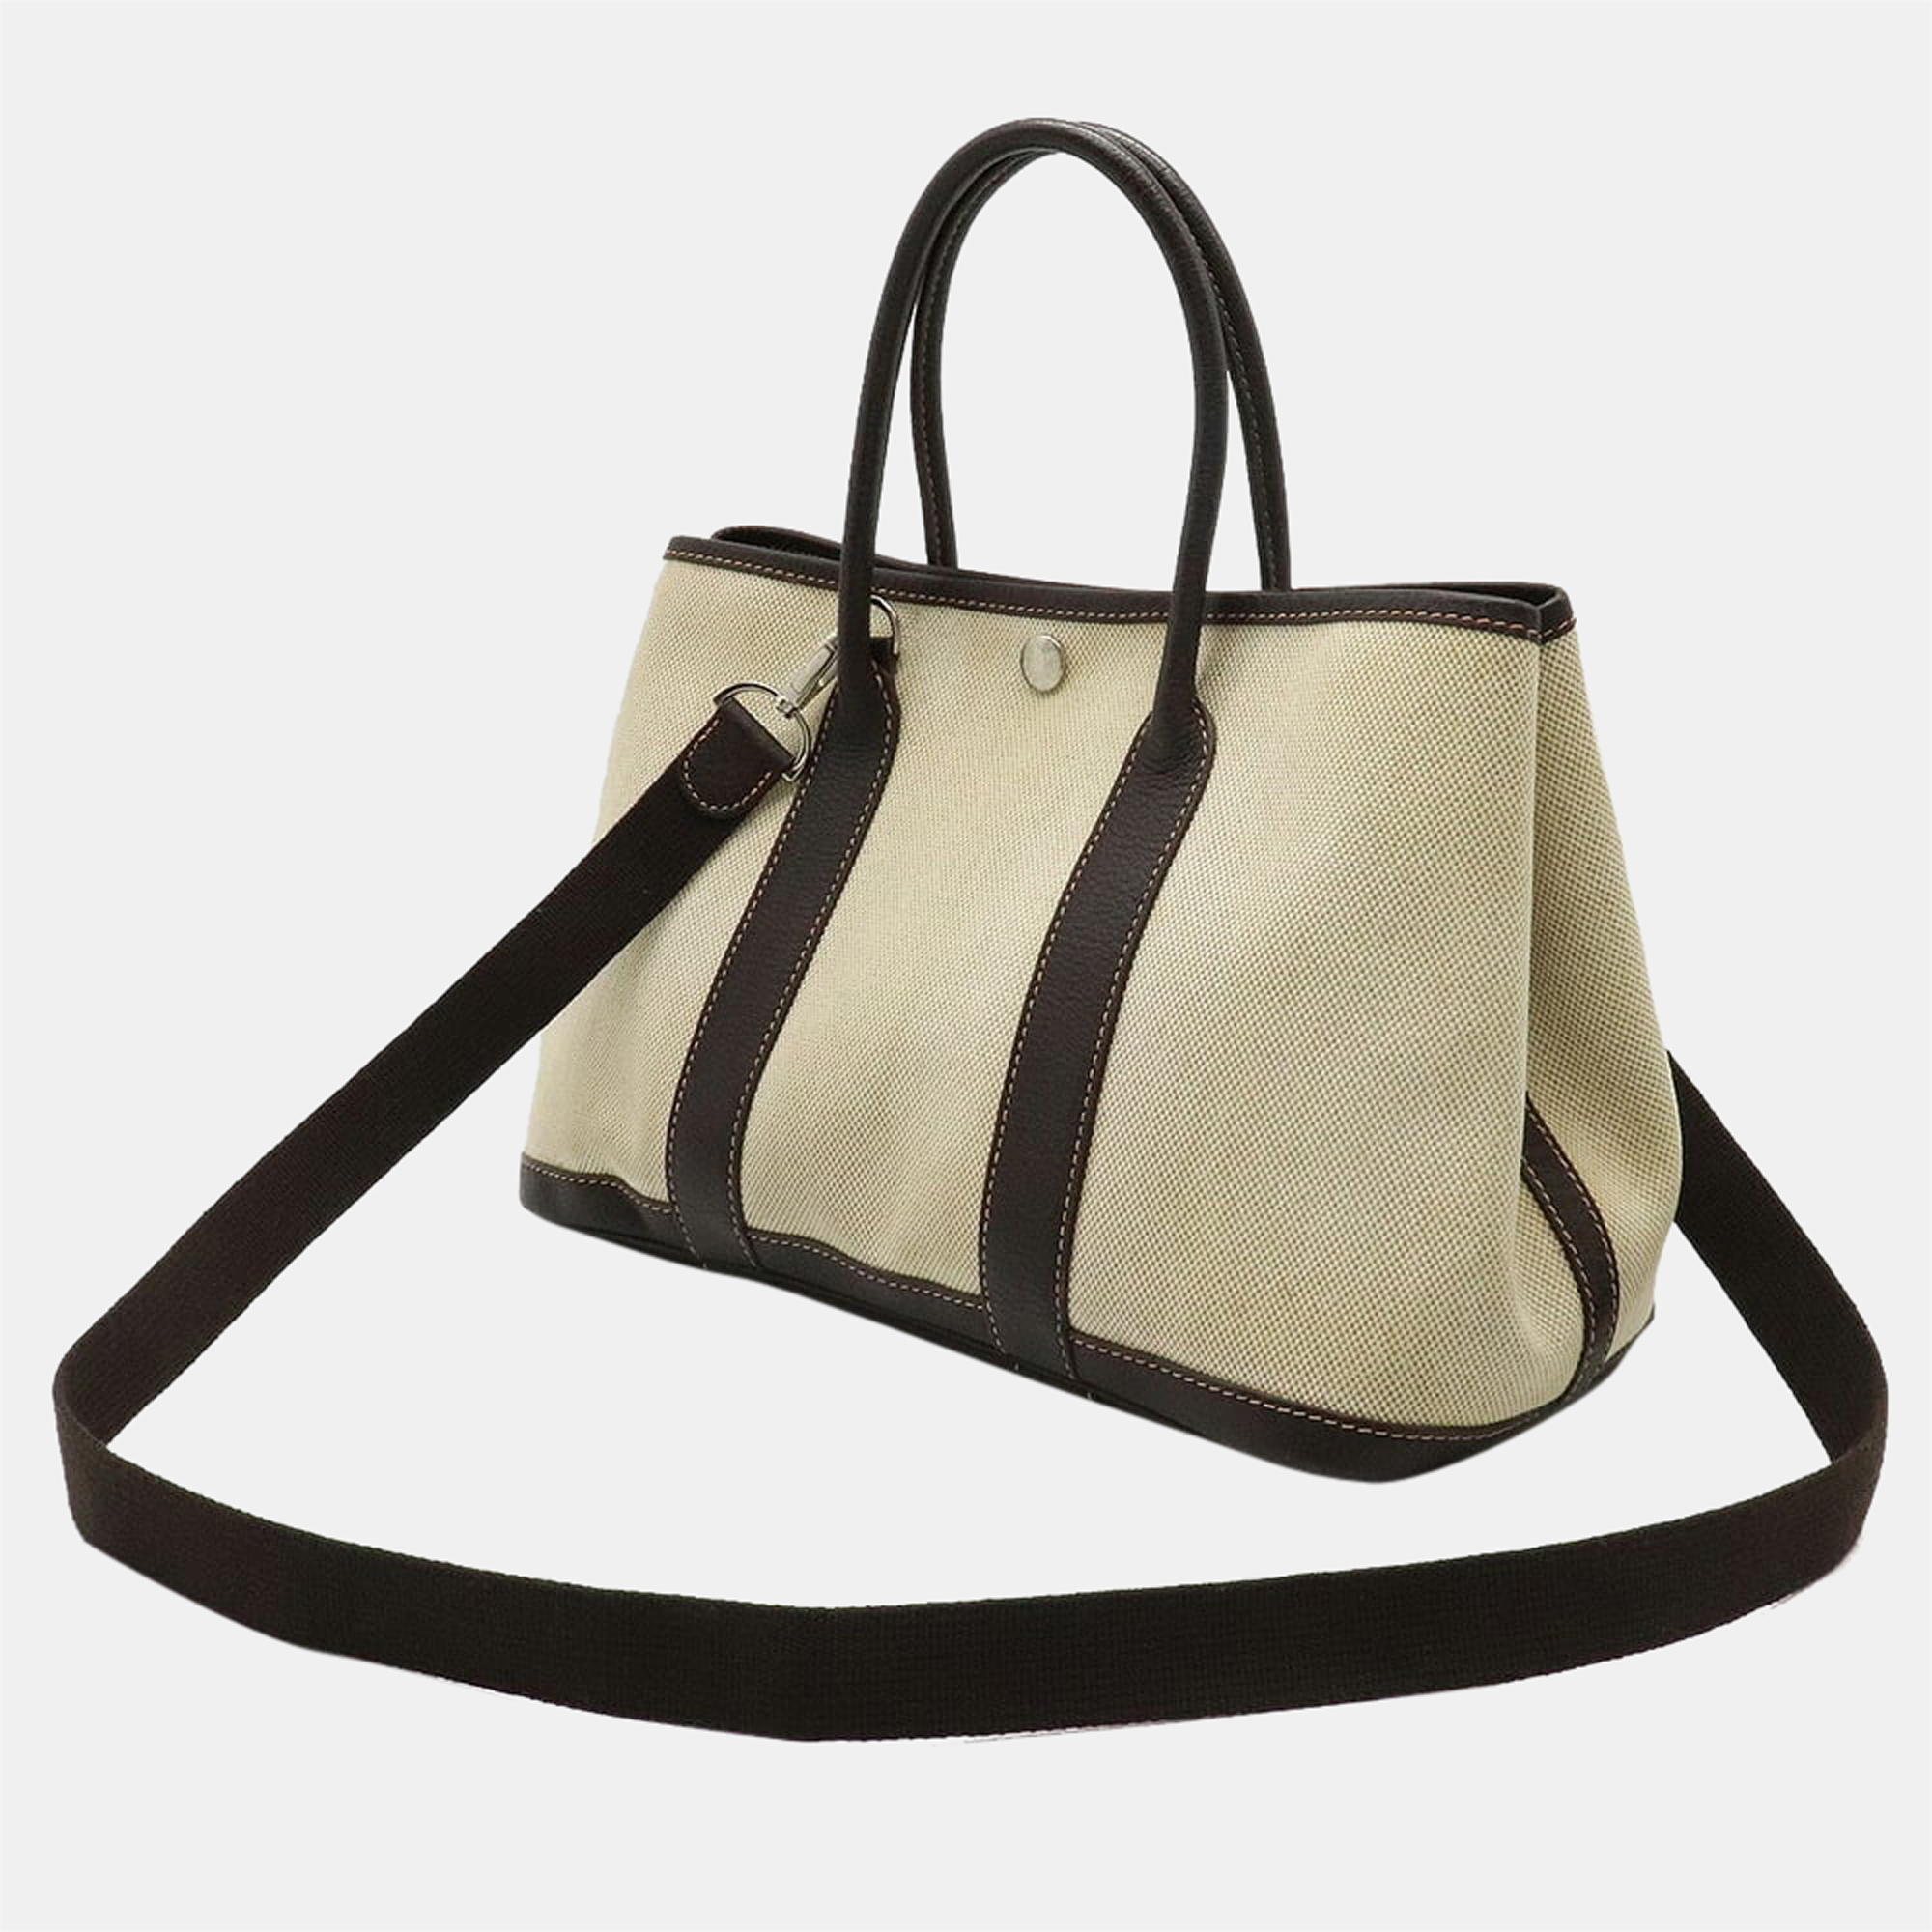 

Hermes garden TPM tote bag handbag toile ash leather beige dark brown H stamp